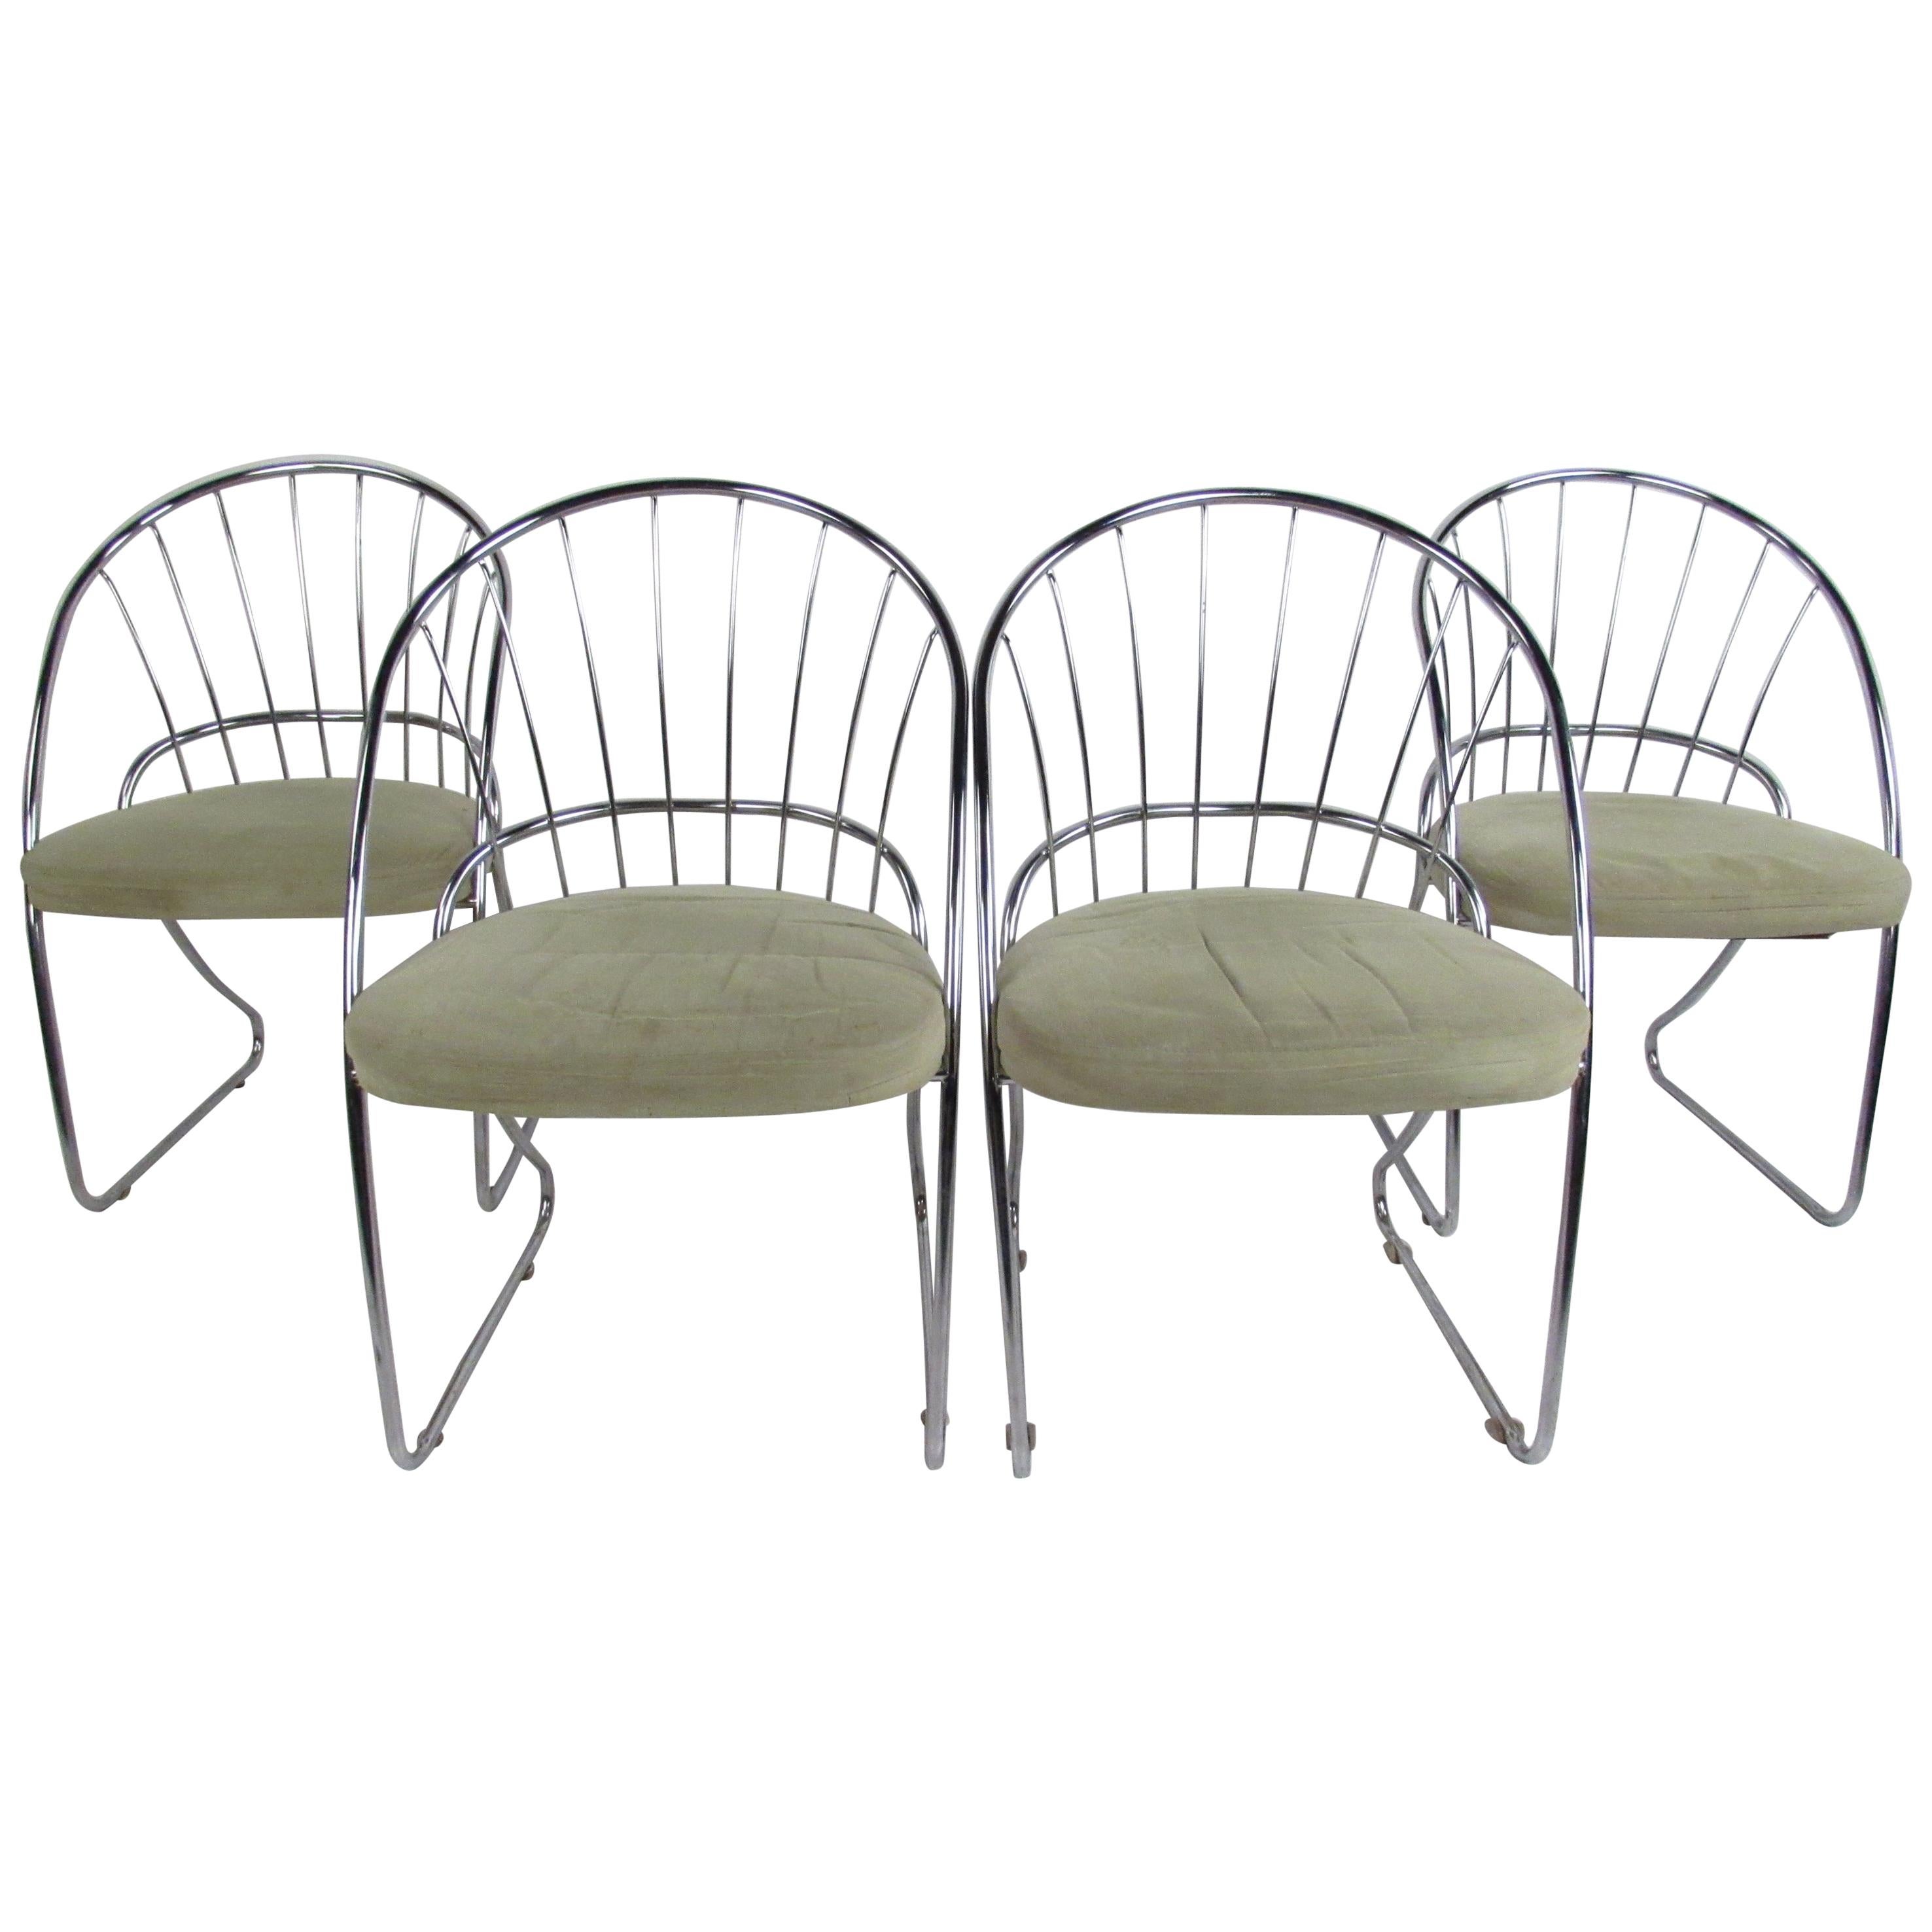 Quatre chaises de salle à manger The Moderns Furniture par Daystrom Furniture Co.